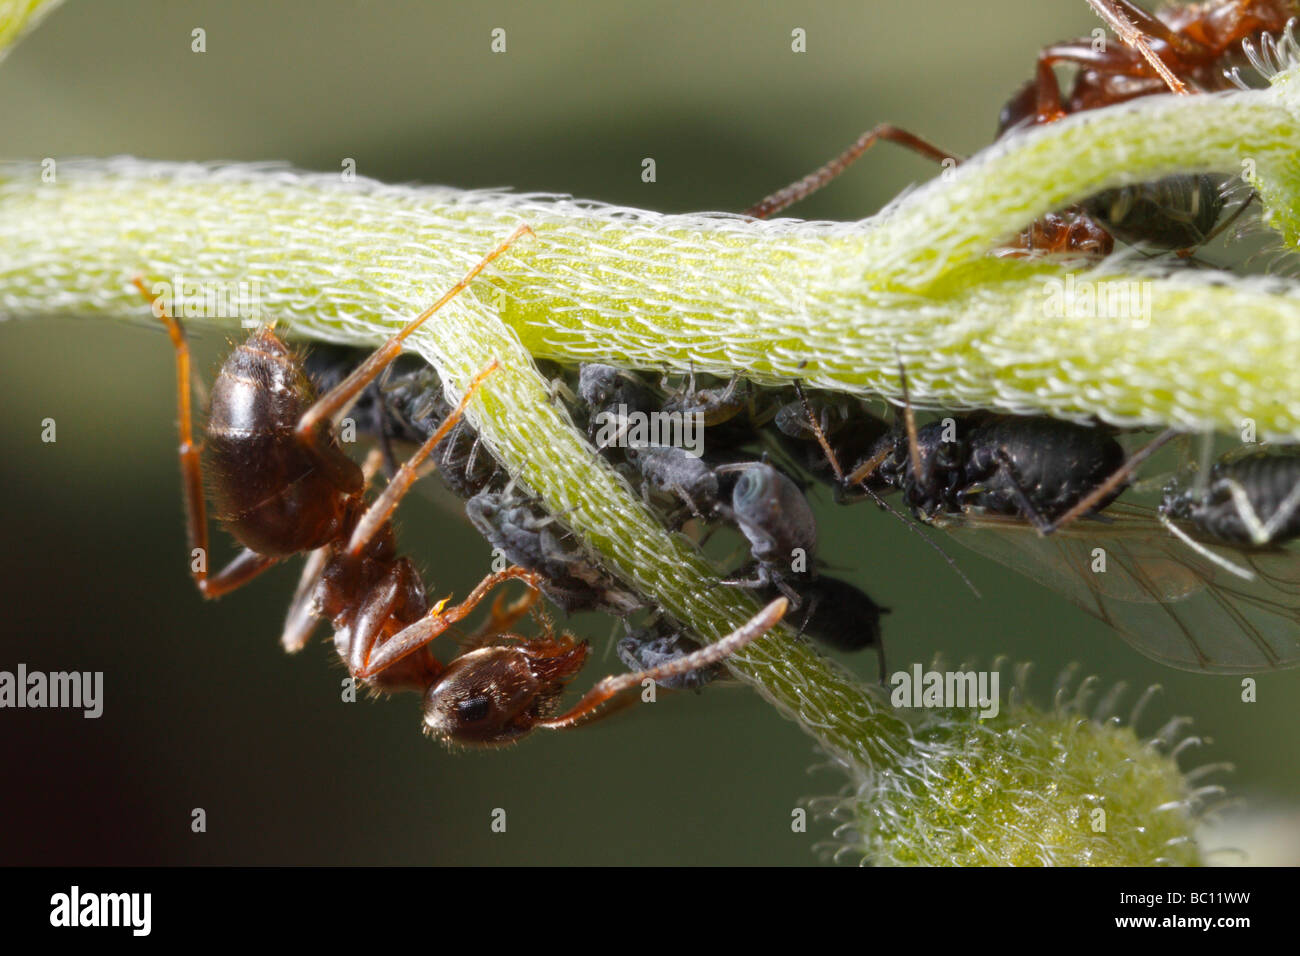 Lasius niger, la hormiga negra de jardín, y los áfidos. La hormiga es ordeñar los áfidos. La flor es una Forget-me-not o Myosotis. Foto de stock